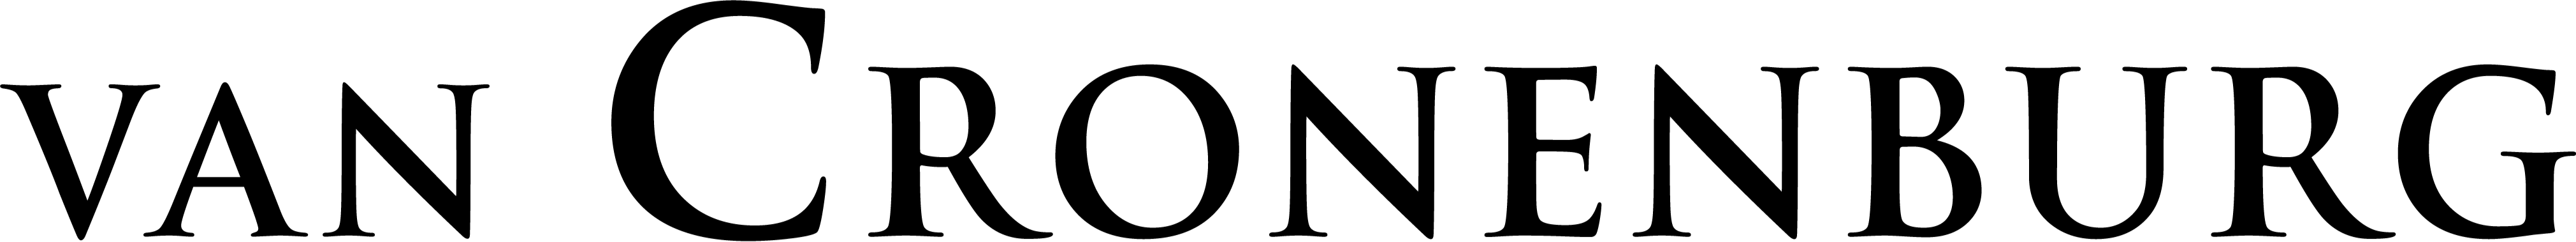 Logo vc